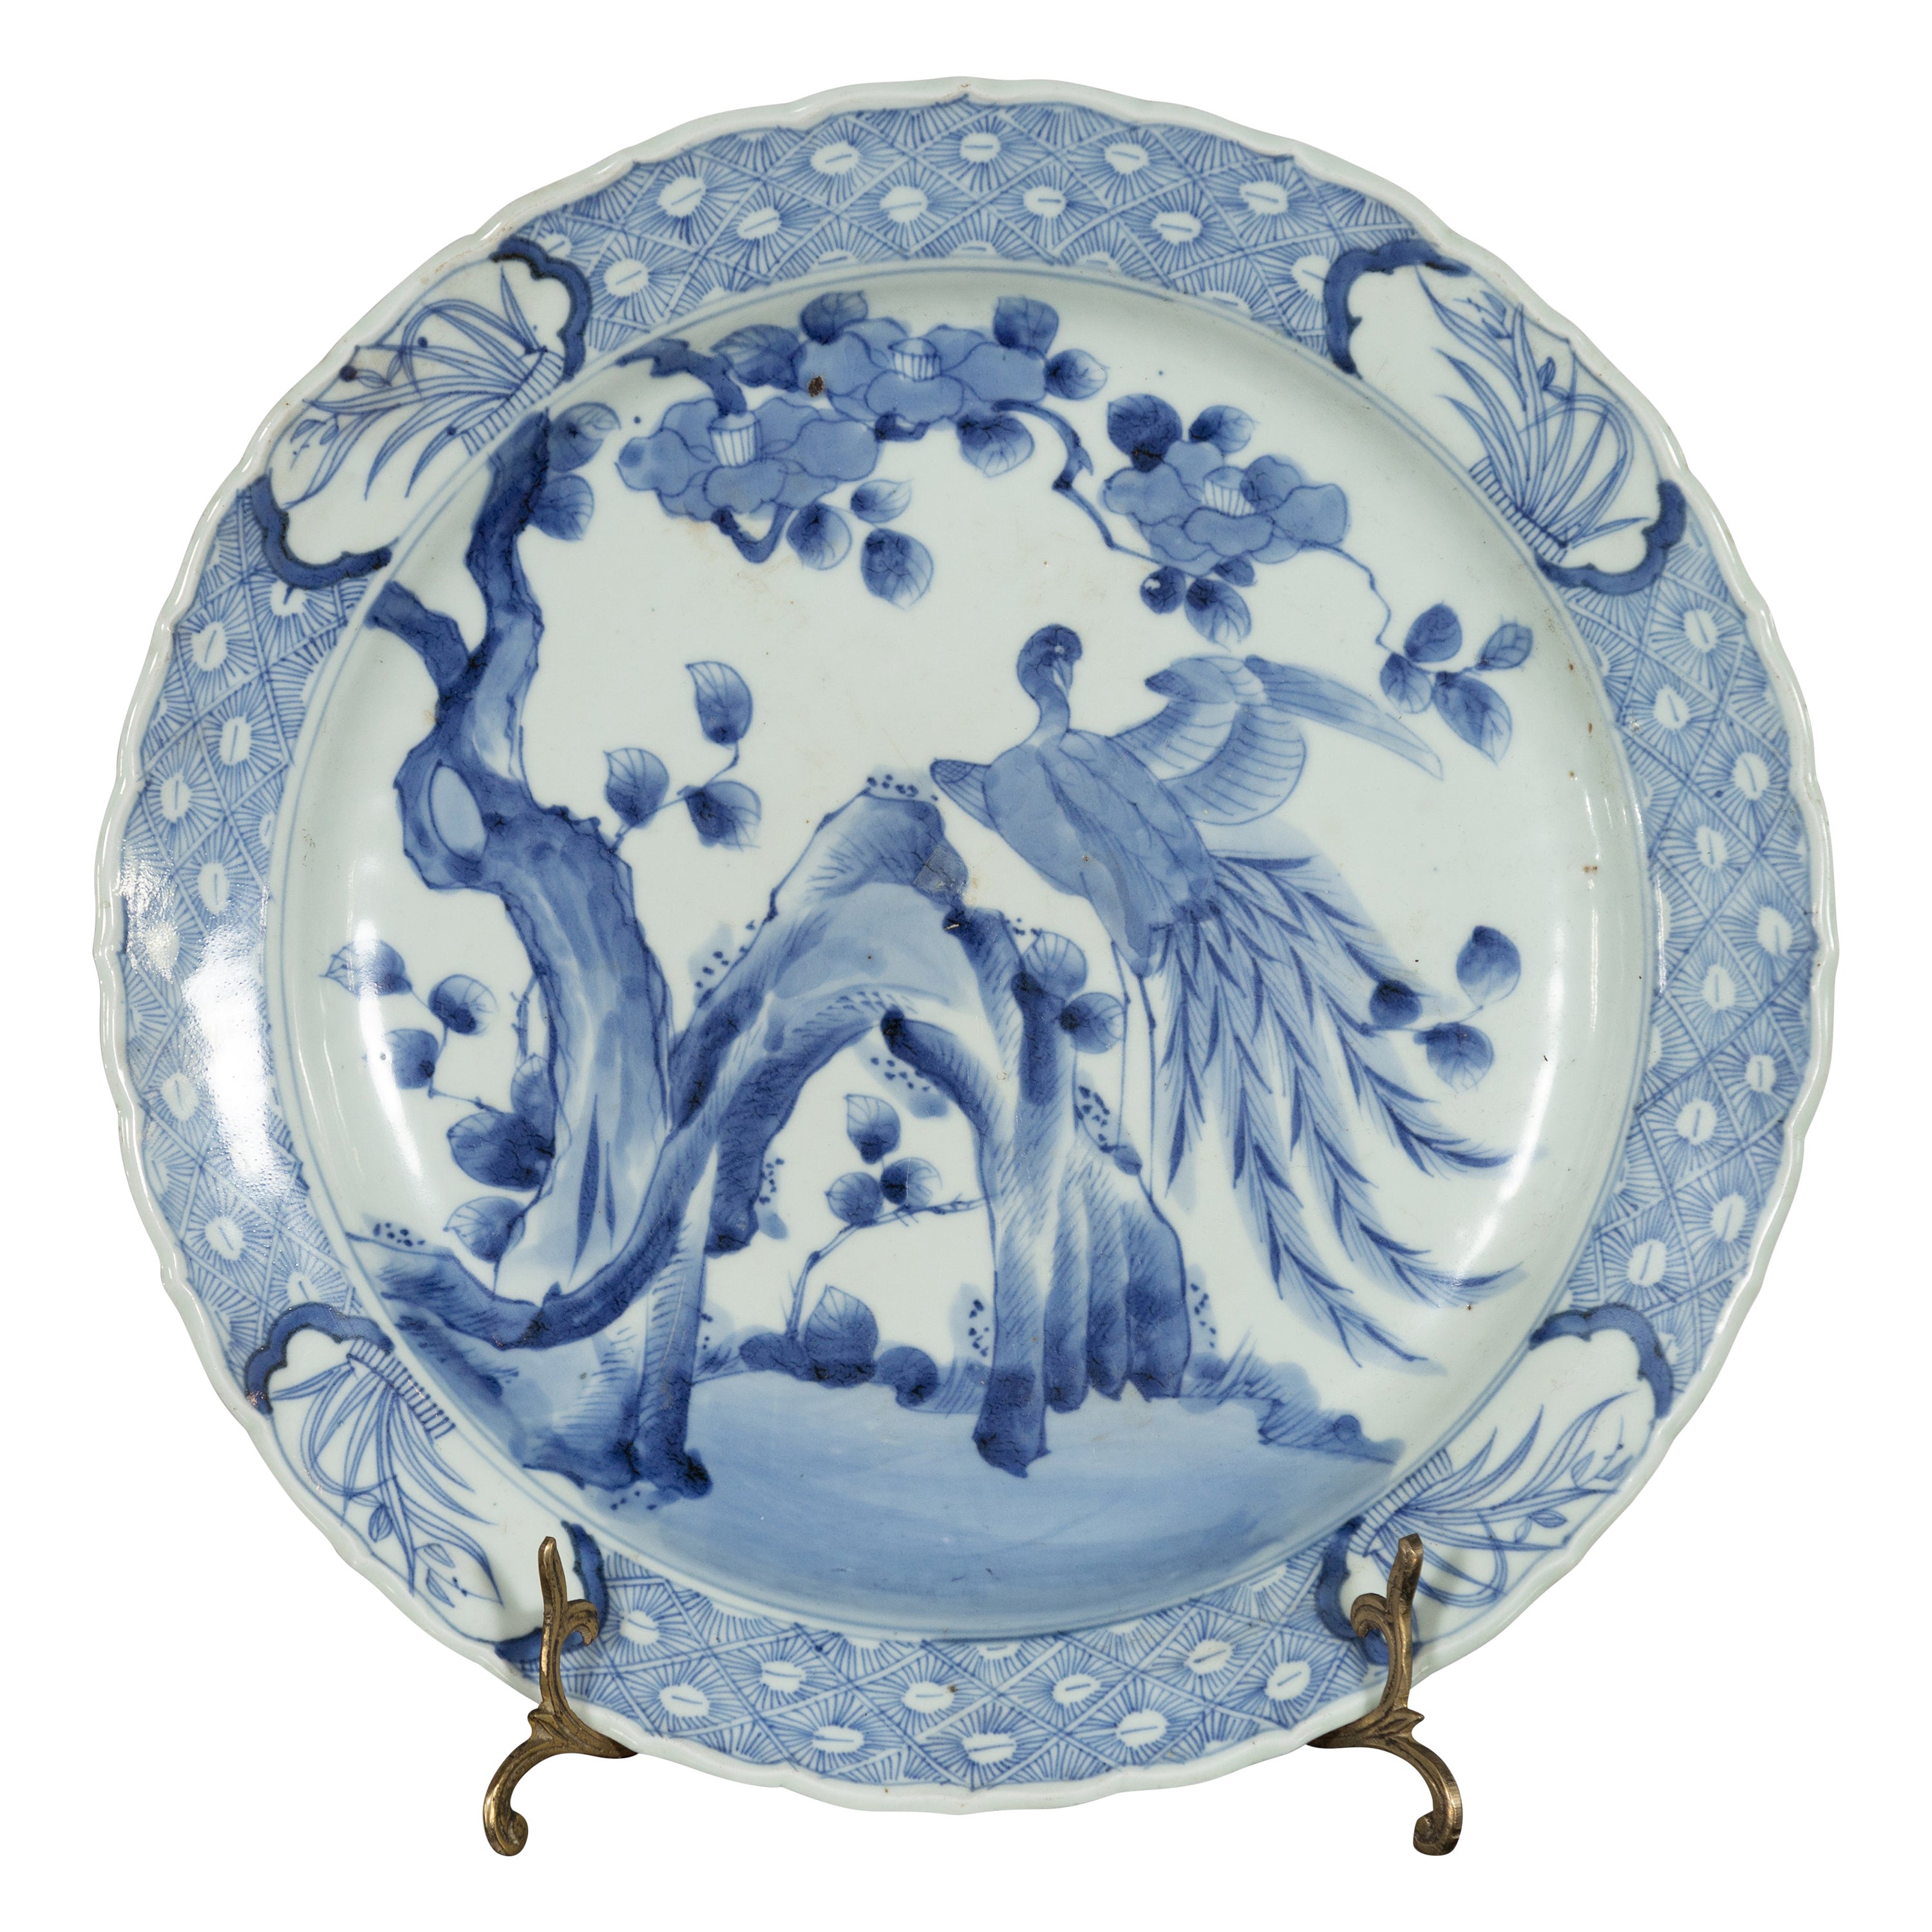 Assiette en porcelaine japonaise du 19e siècle avec décor d'oiseaux peints en bleu et blanc